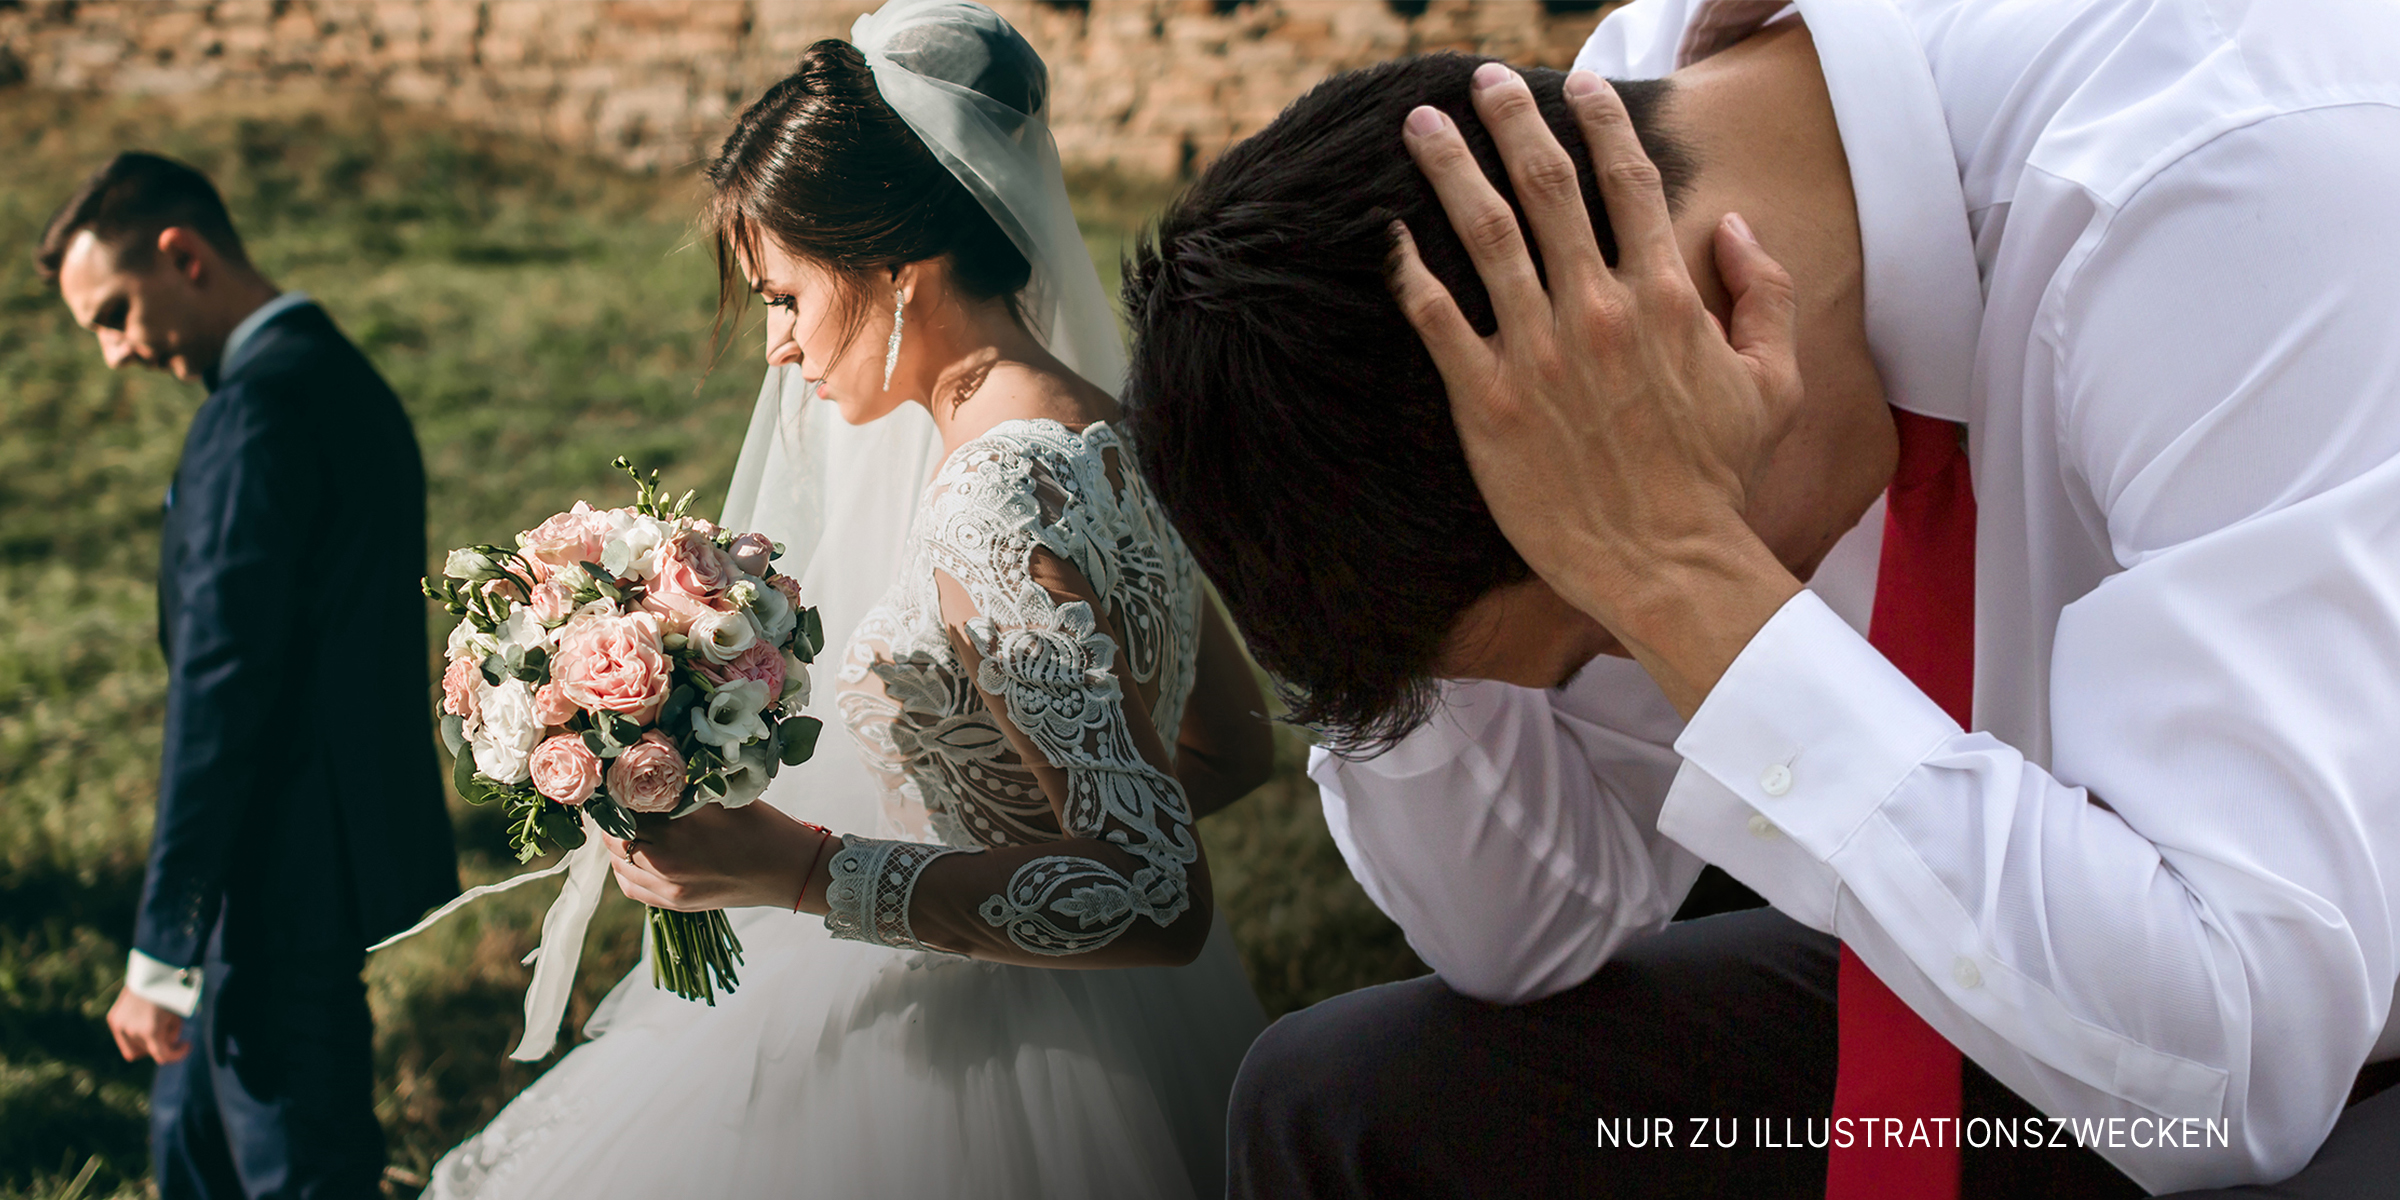 Die Braut, der Bräutigam und der Bruder | Quelle: Shutterstock